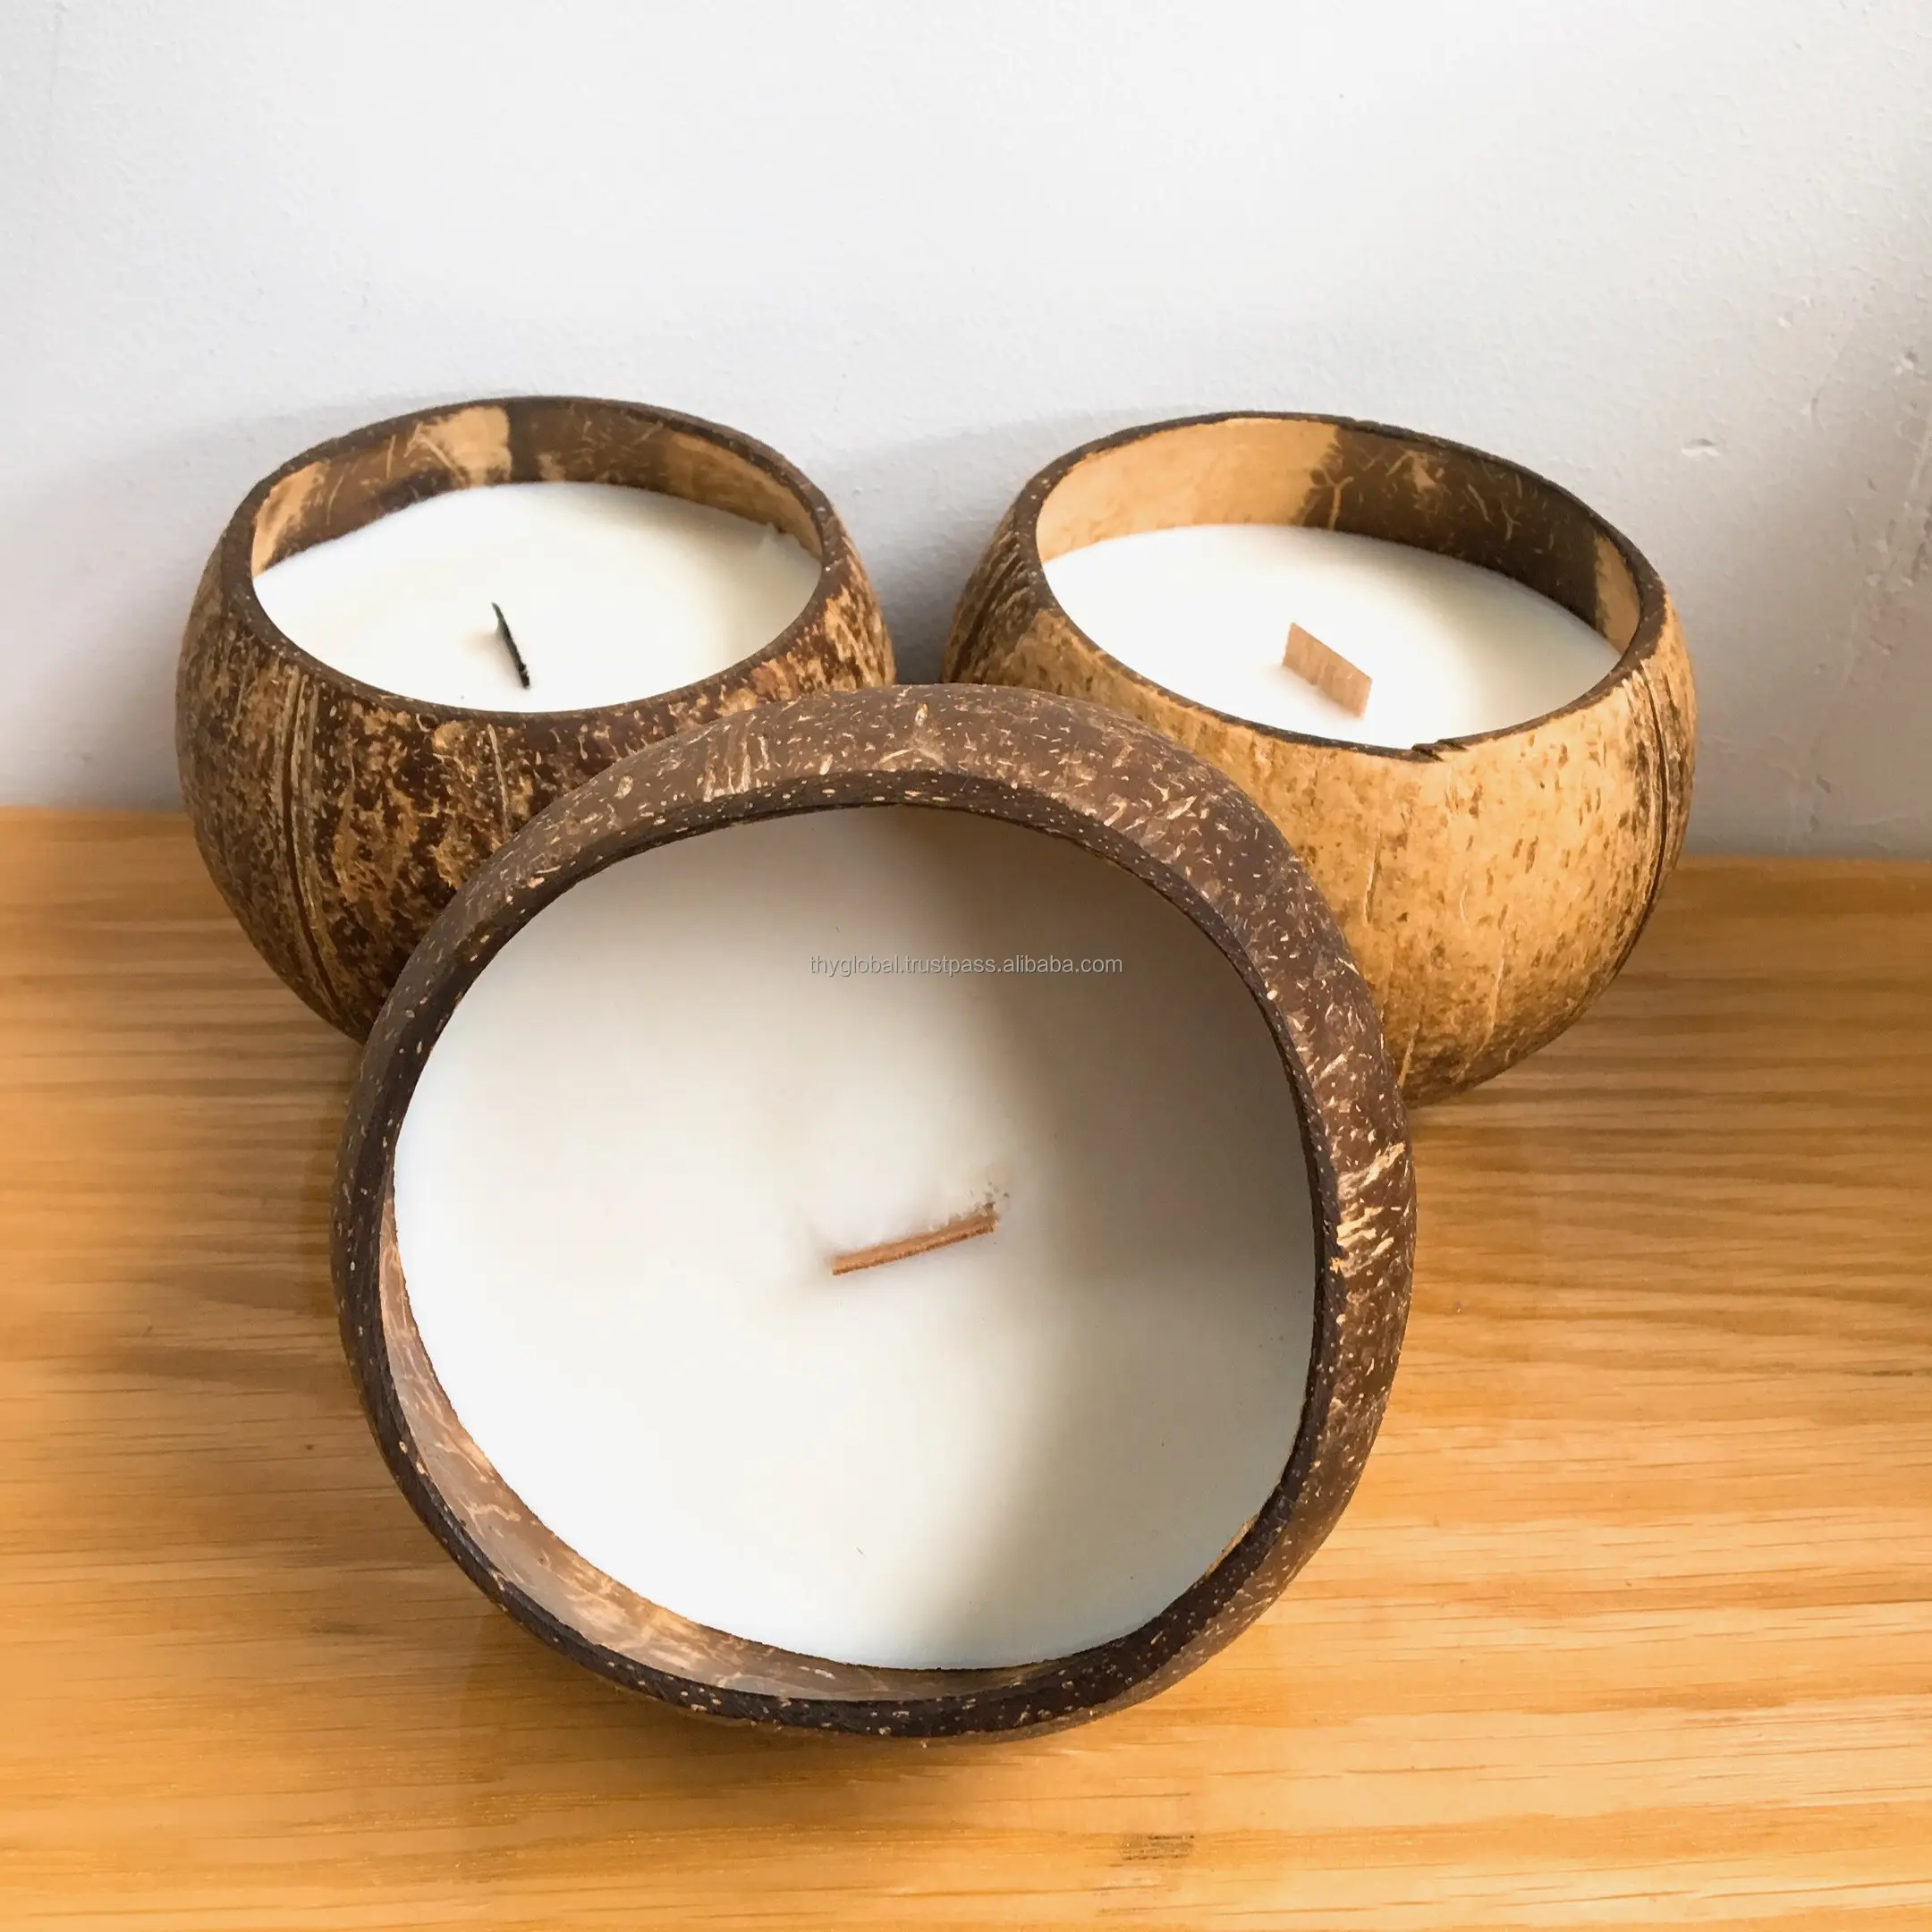 공장 직접 아로마 테라피 양초 에센셜 오일 코코넛 왁스 향기로운 주석 캔 양초 스트레스 릴리프 선물 세트